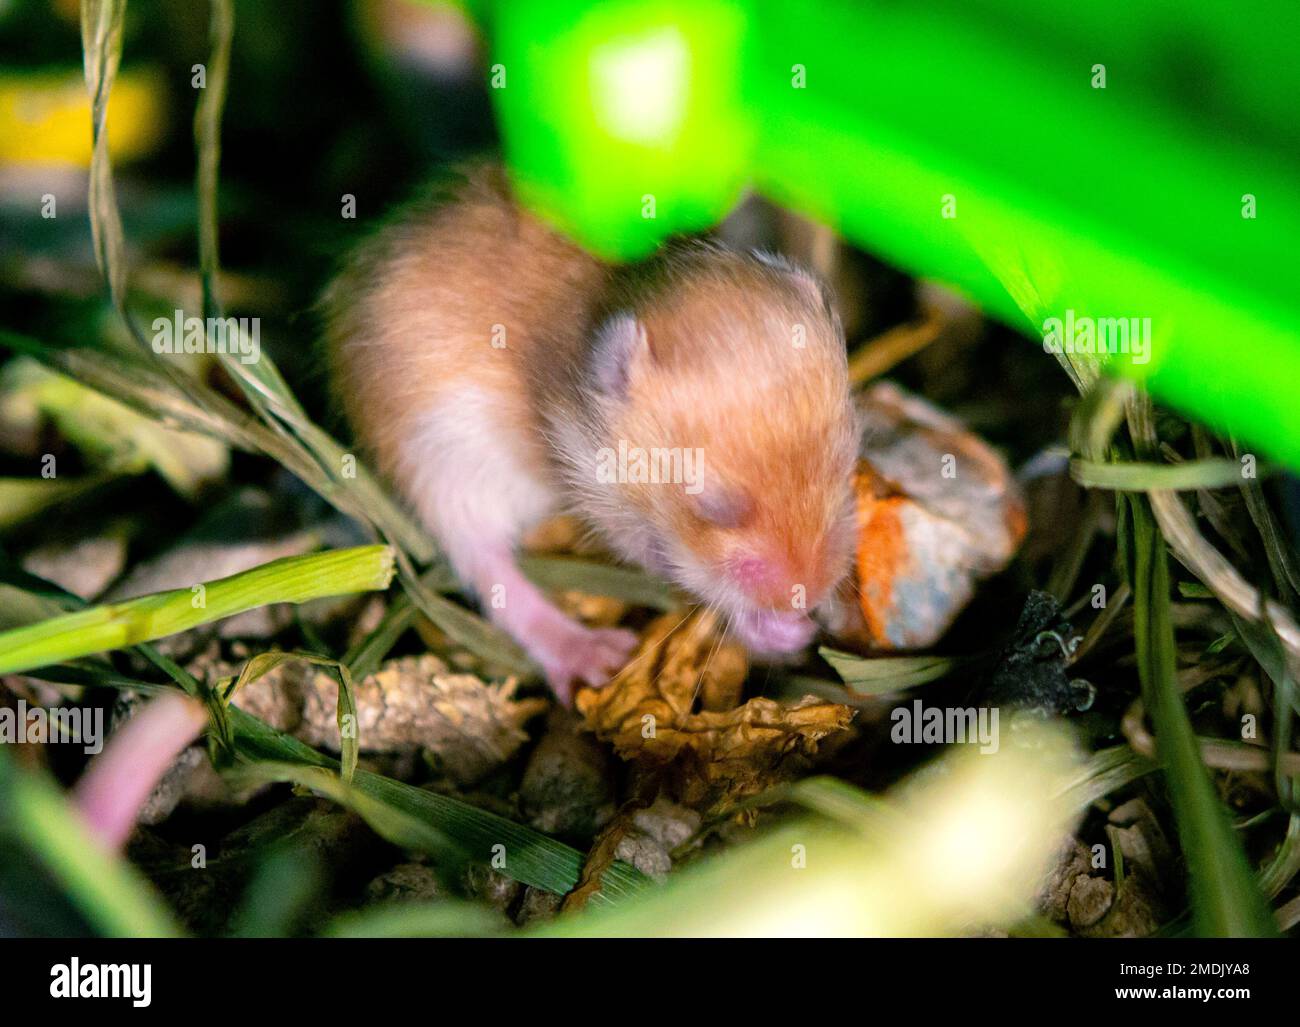 Nahaufnahme des Hamsternests. Viele kleine Hamster im Gras nisten. Neugeborene Hamster. Kleine Nagetiere. Haustiere. Syrische Hamster. Sehr kleine blinde Hamster. Fortpflanzung und Zucht von Haustieren. Nagetier-Jungen Stockfoto